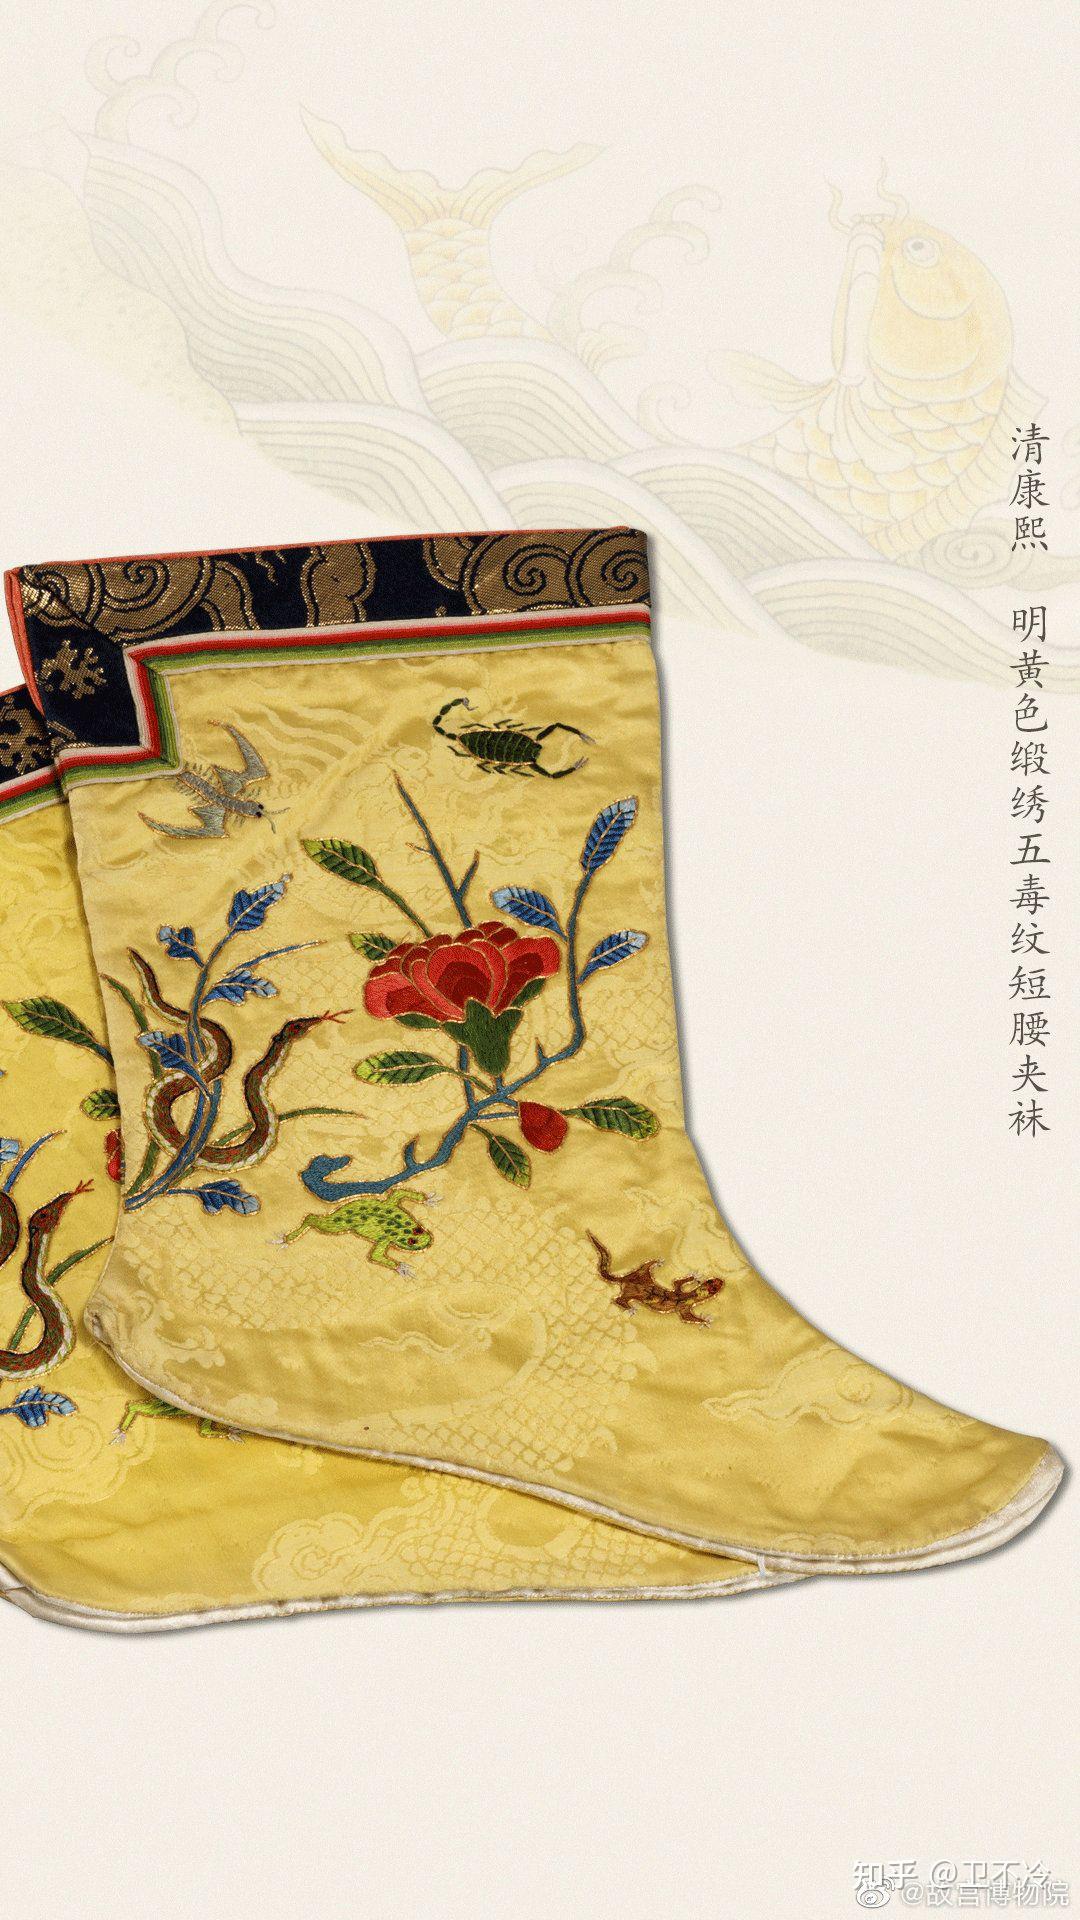 古时的袜子,是用麻线织成的,穿着不十分舒服,后经曹丕改良,用丝罗织造